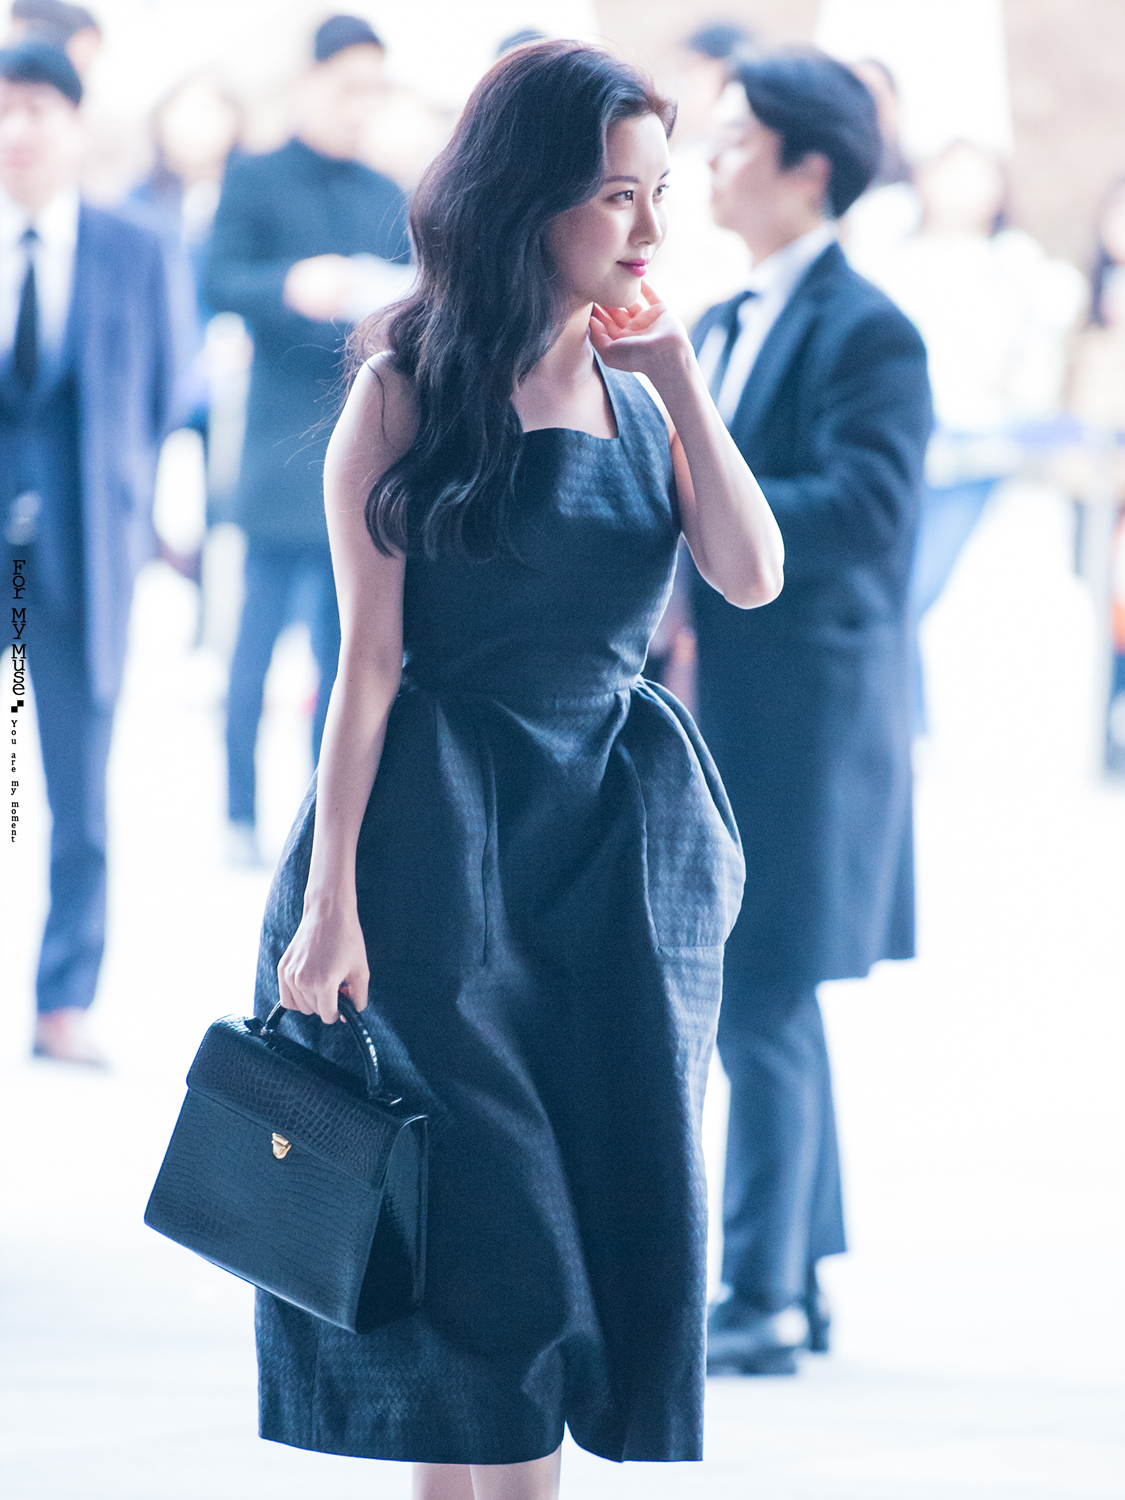 [PIC][29-03-2017]Tiffany - HyoYeon và SeoHyun tham dự sự kiện ra mắt BST Thu - Đông của thương hiệu "PUSHBUTTON" trong khuôn khổ "2017 S/S HERA Seoul Fashion Week" vào chiều nay - Page 3 2201D25058DC59101C3FAB